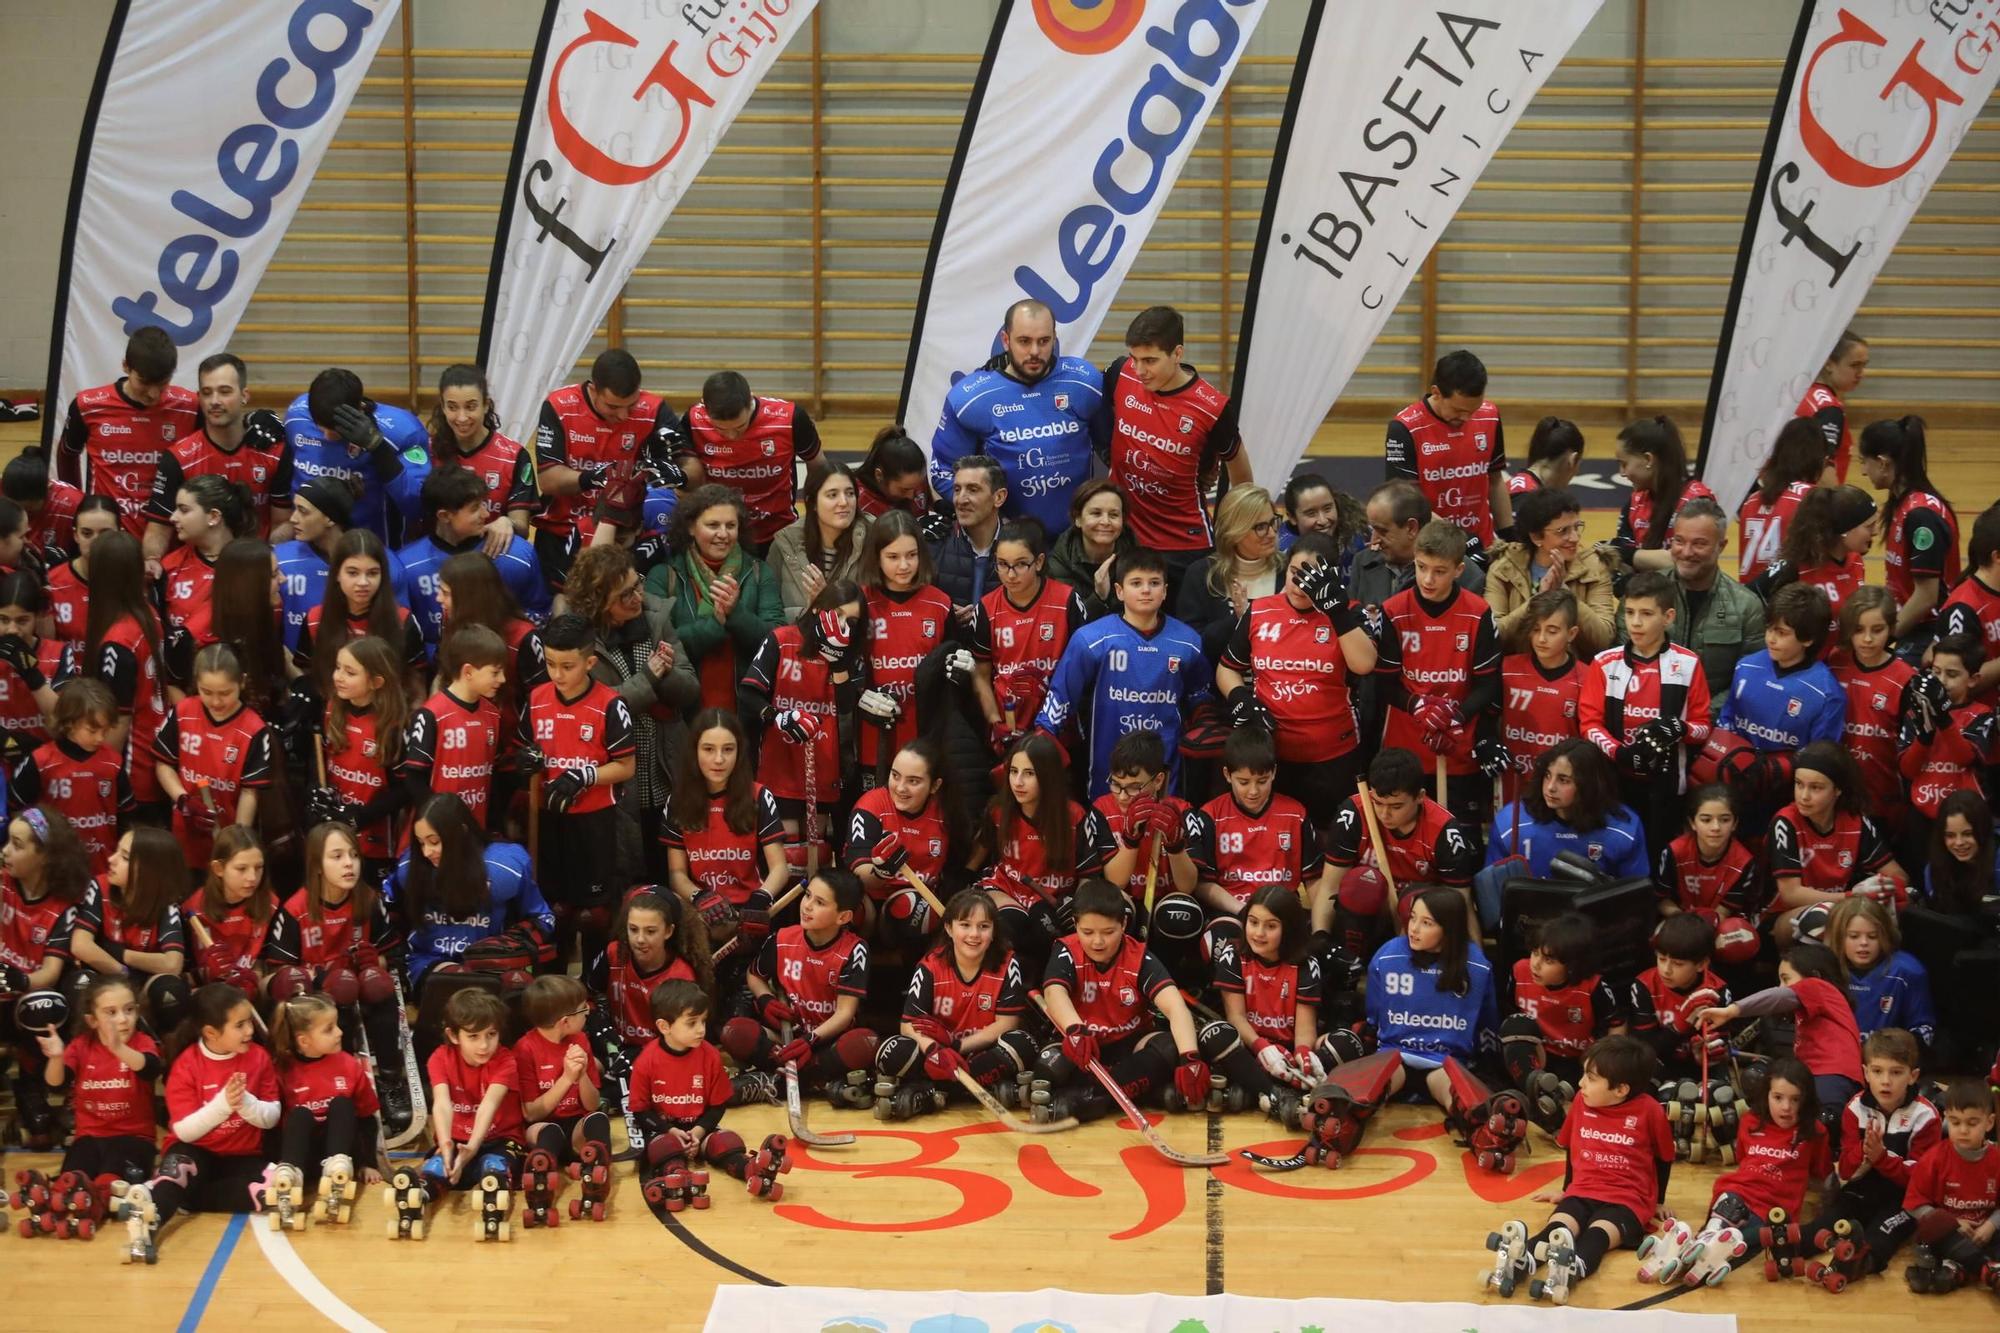 Presentación de los equipos del Telecable de Gijón de hockey sobre patines